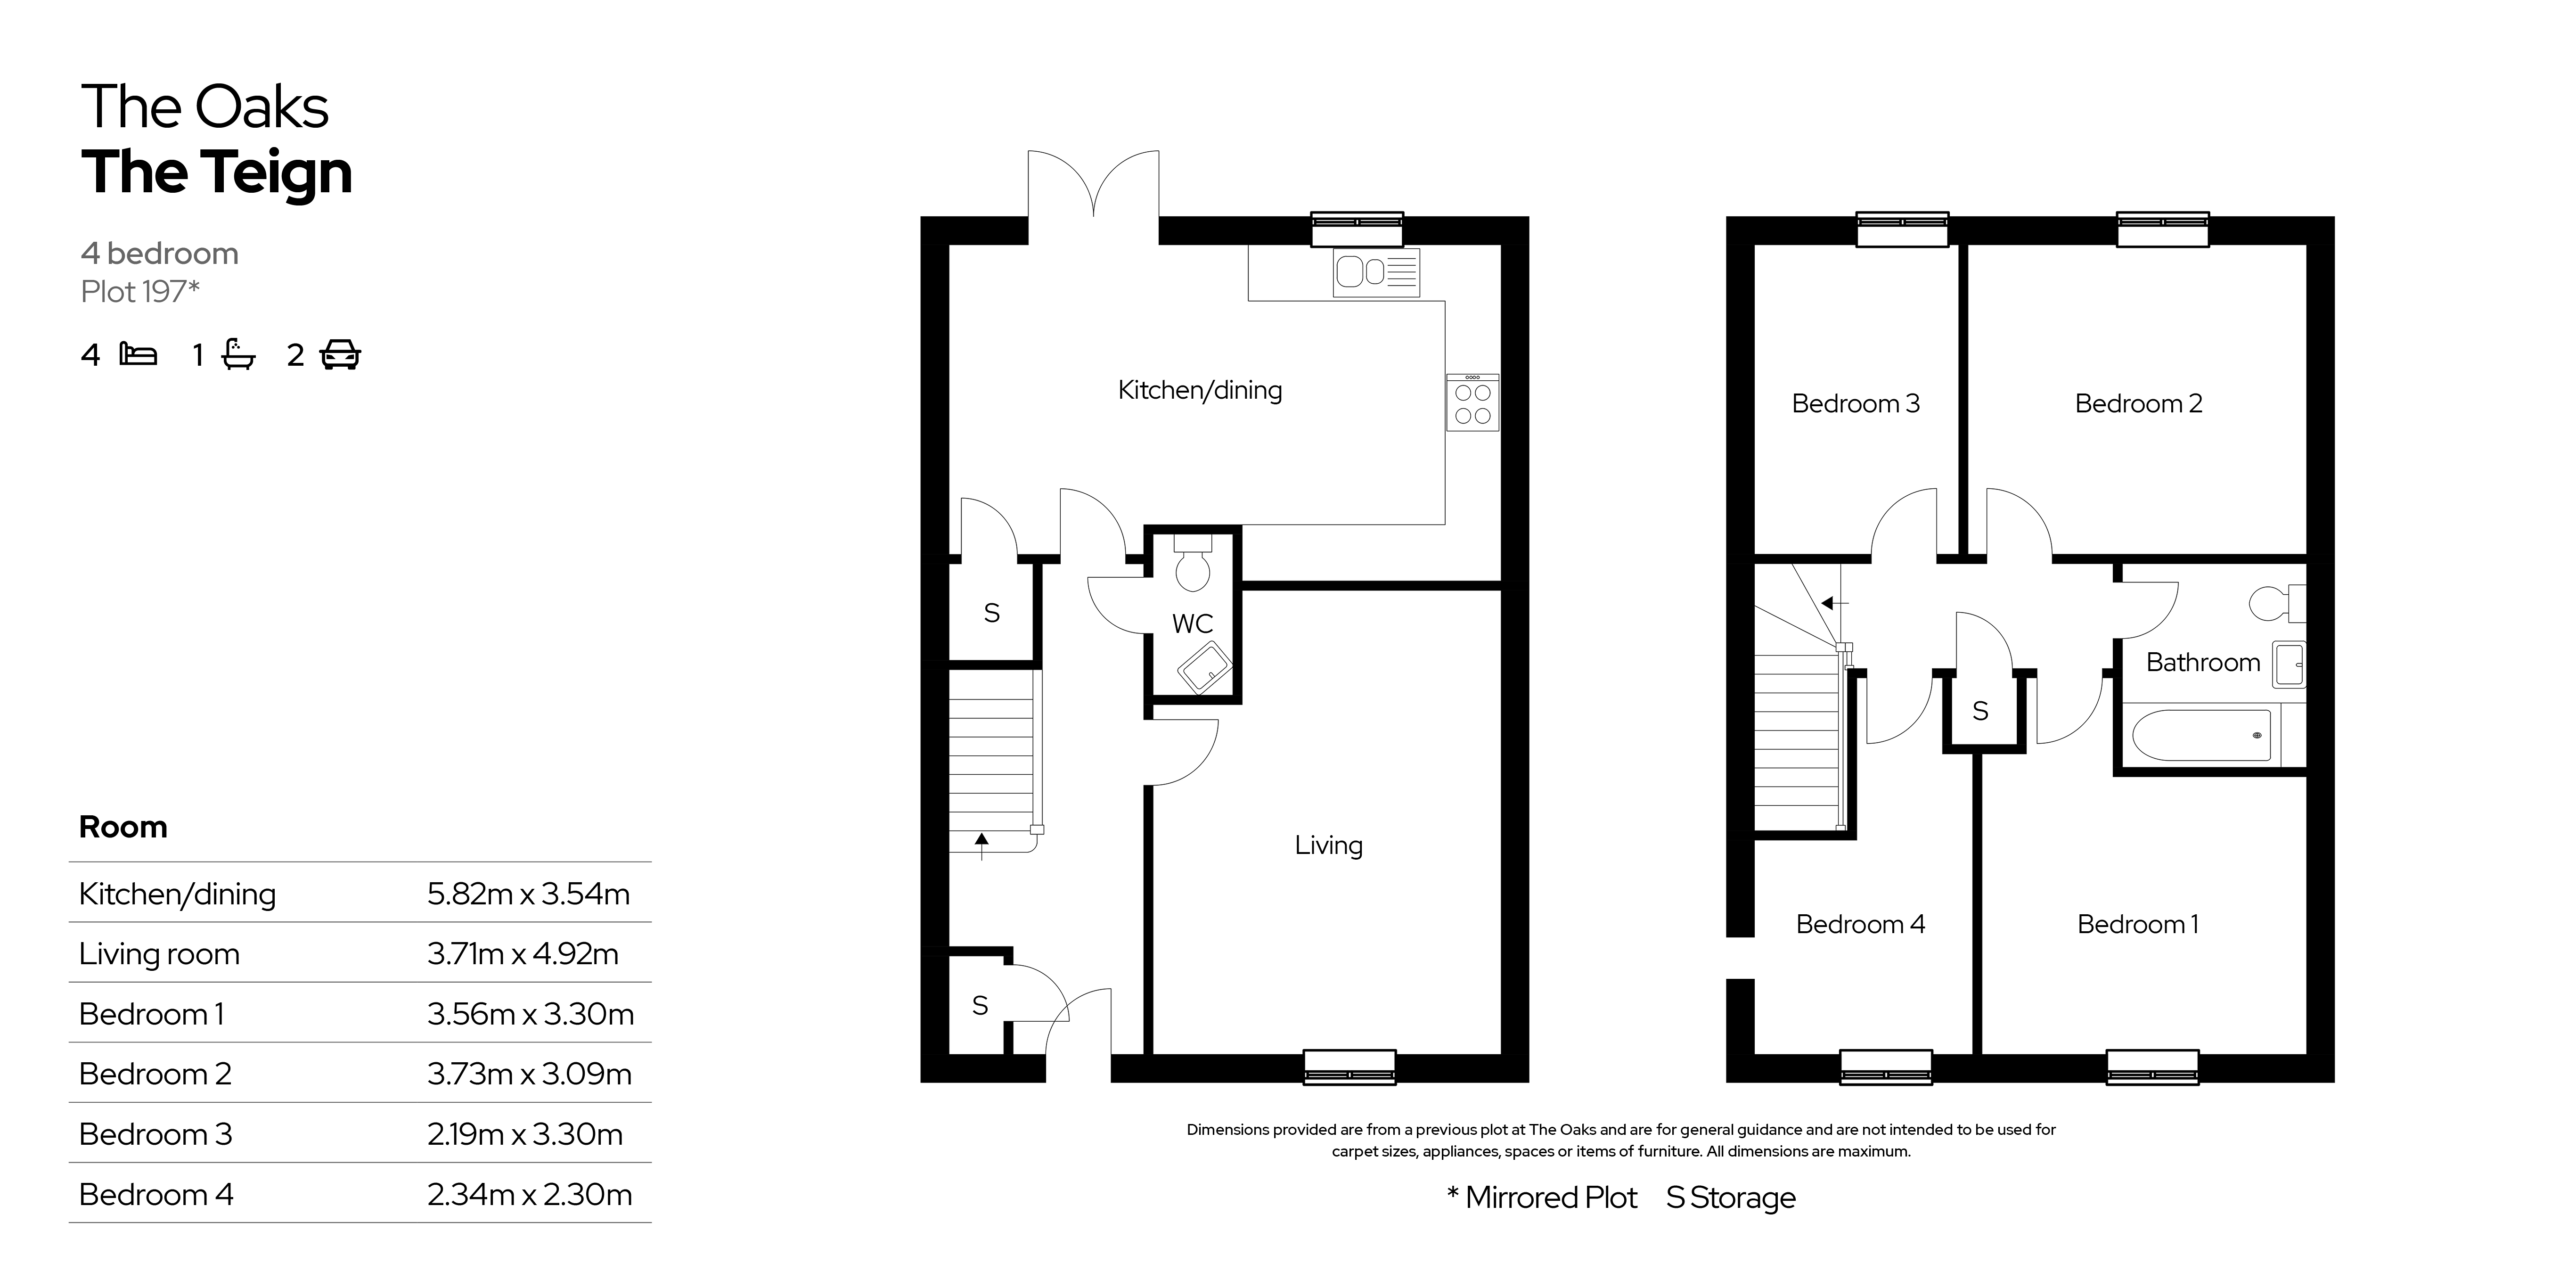 The Oaks floor plans- Plot 197 4 bed